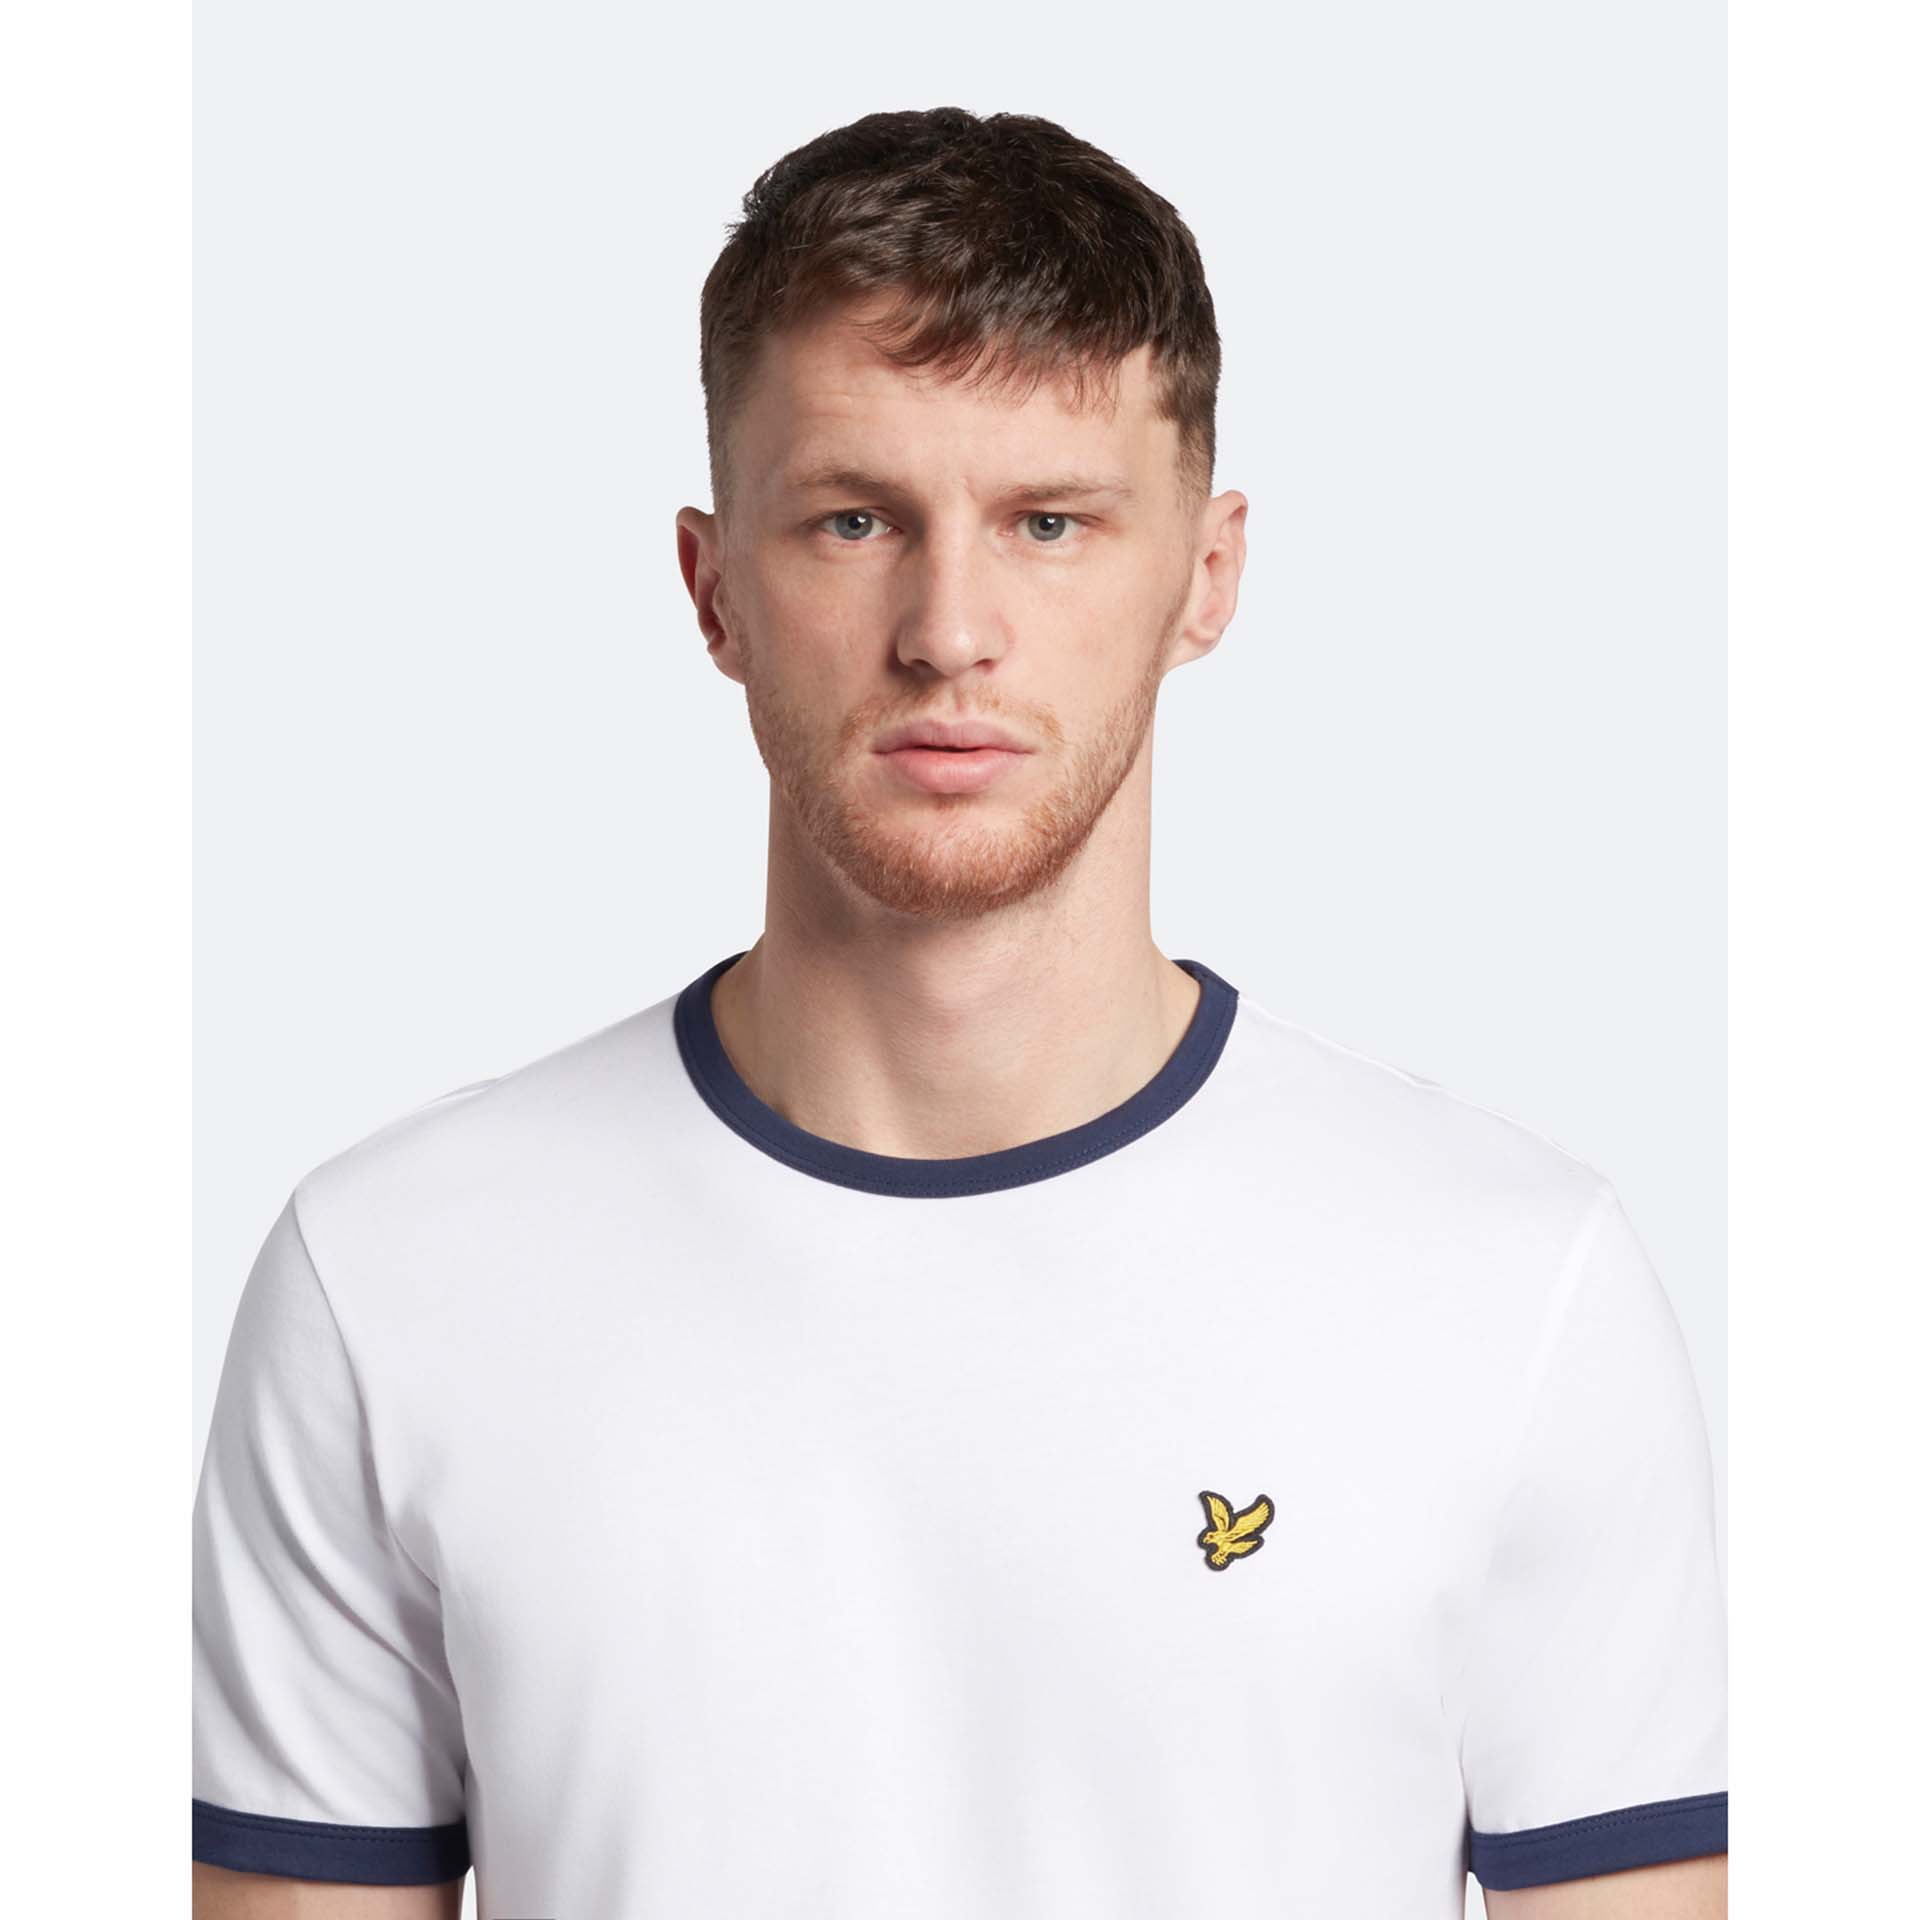 Lyle & Scott Ringer T-Shirt White/Navy